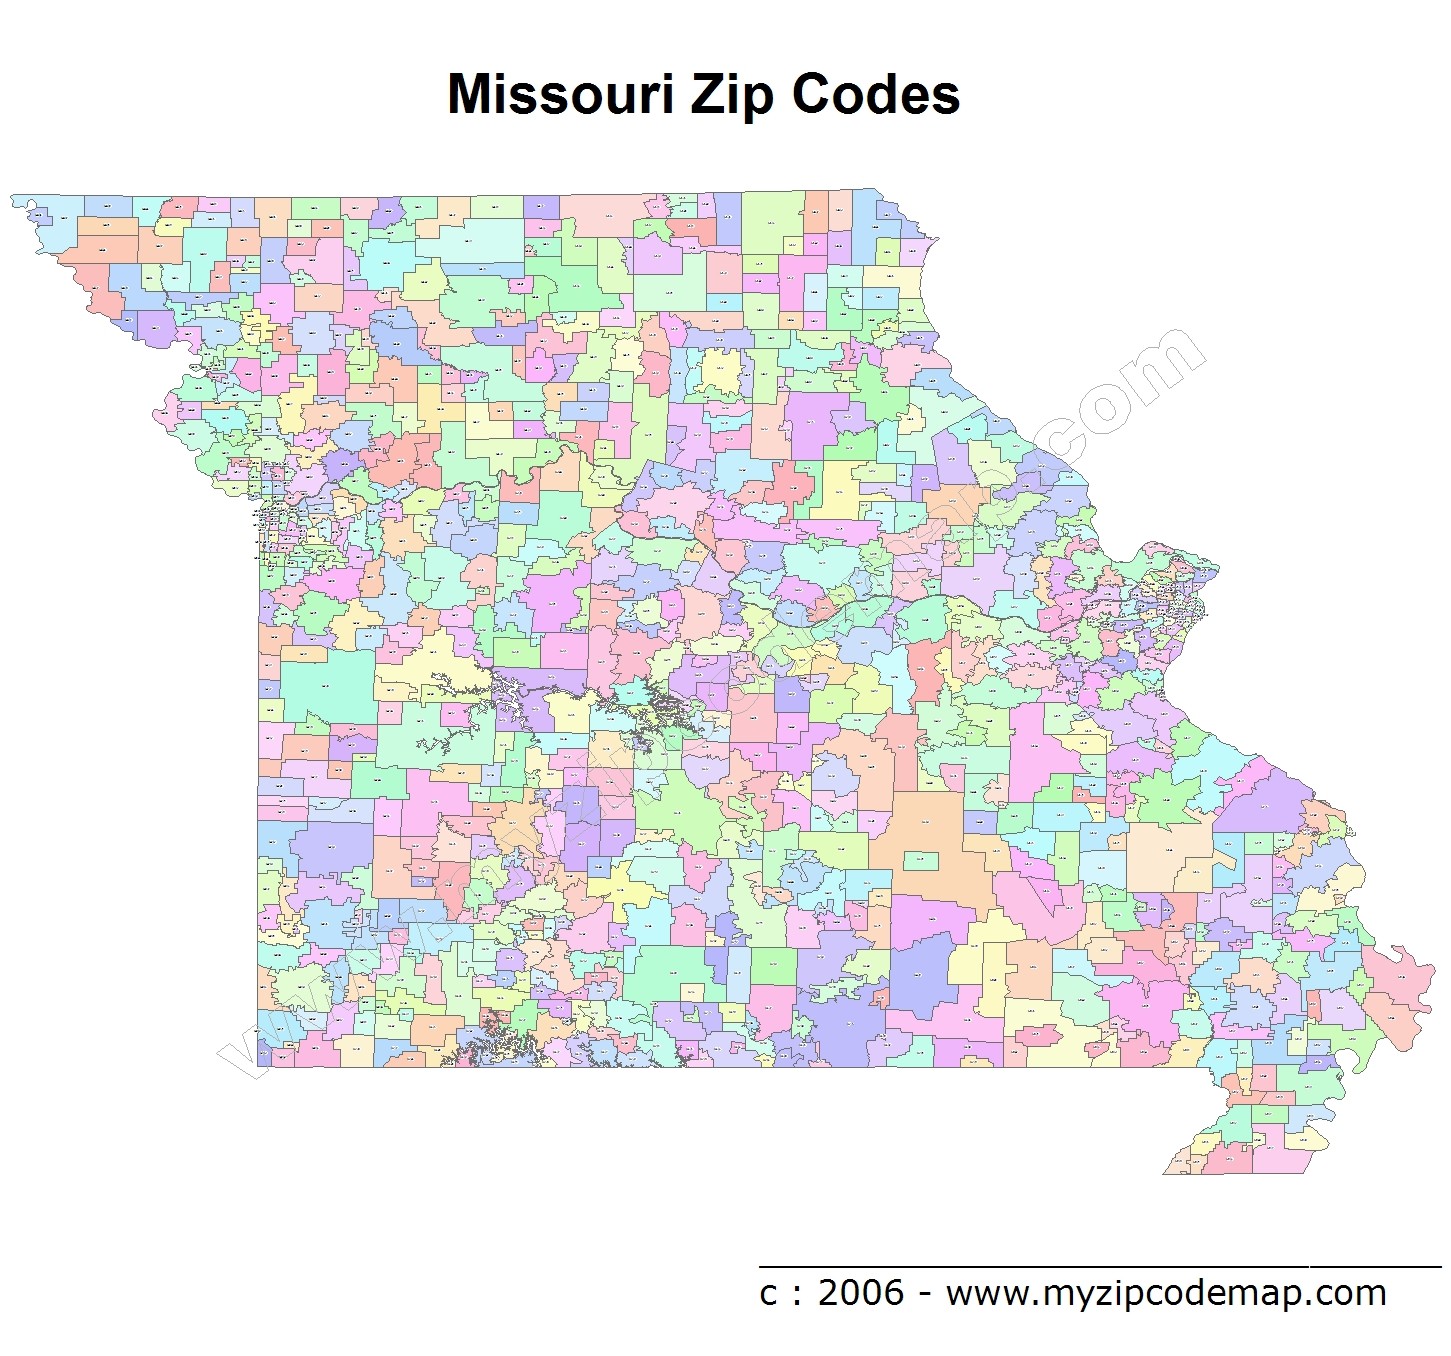 Missouri (MO) Zip Code Map